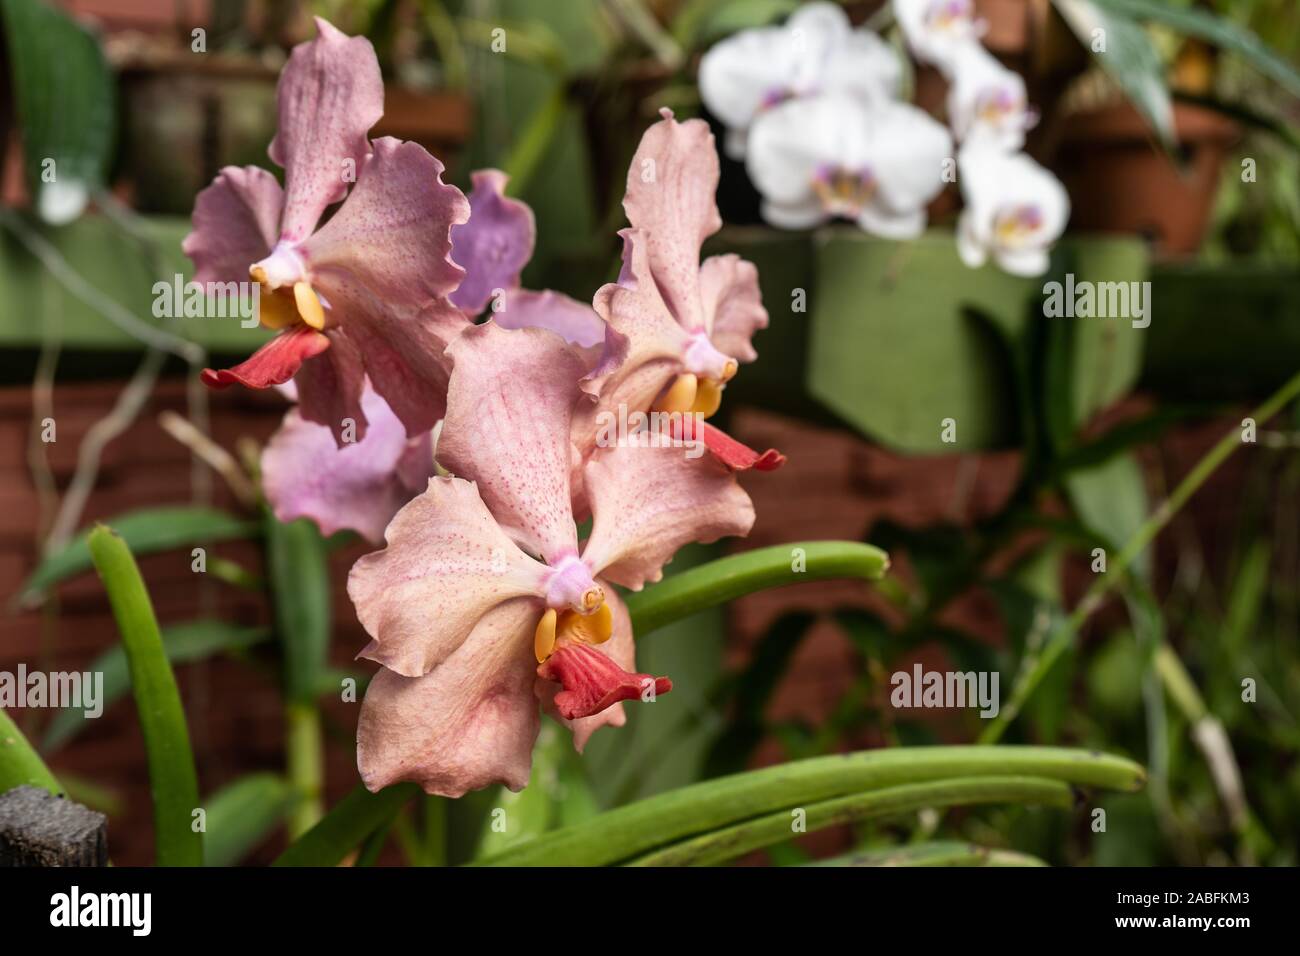 Pink vanda orchids in the botanical garden. Queen of vanda orchids Stock Photo